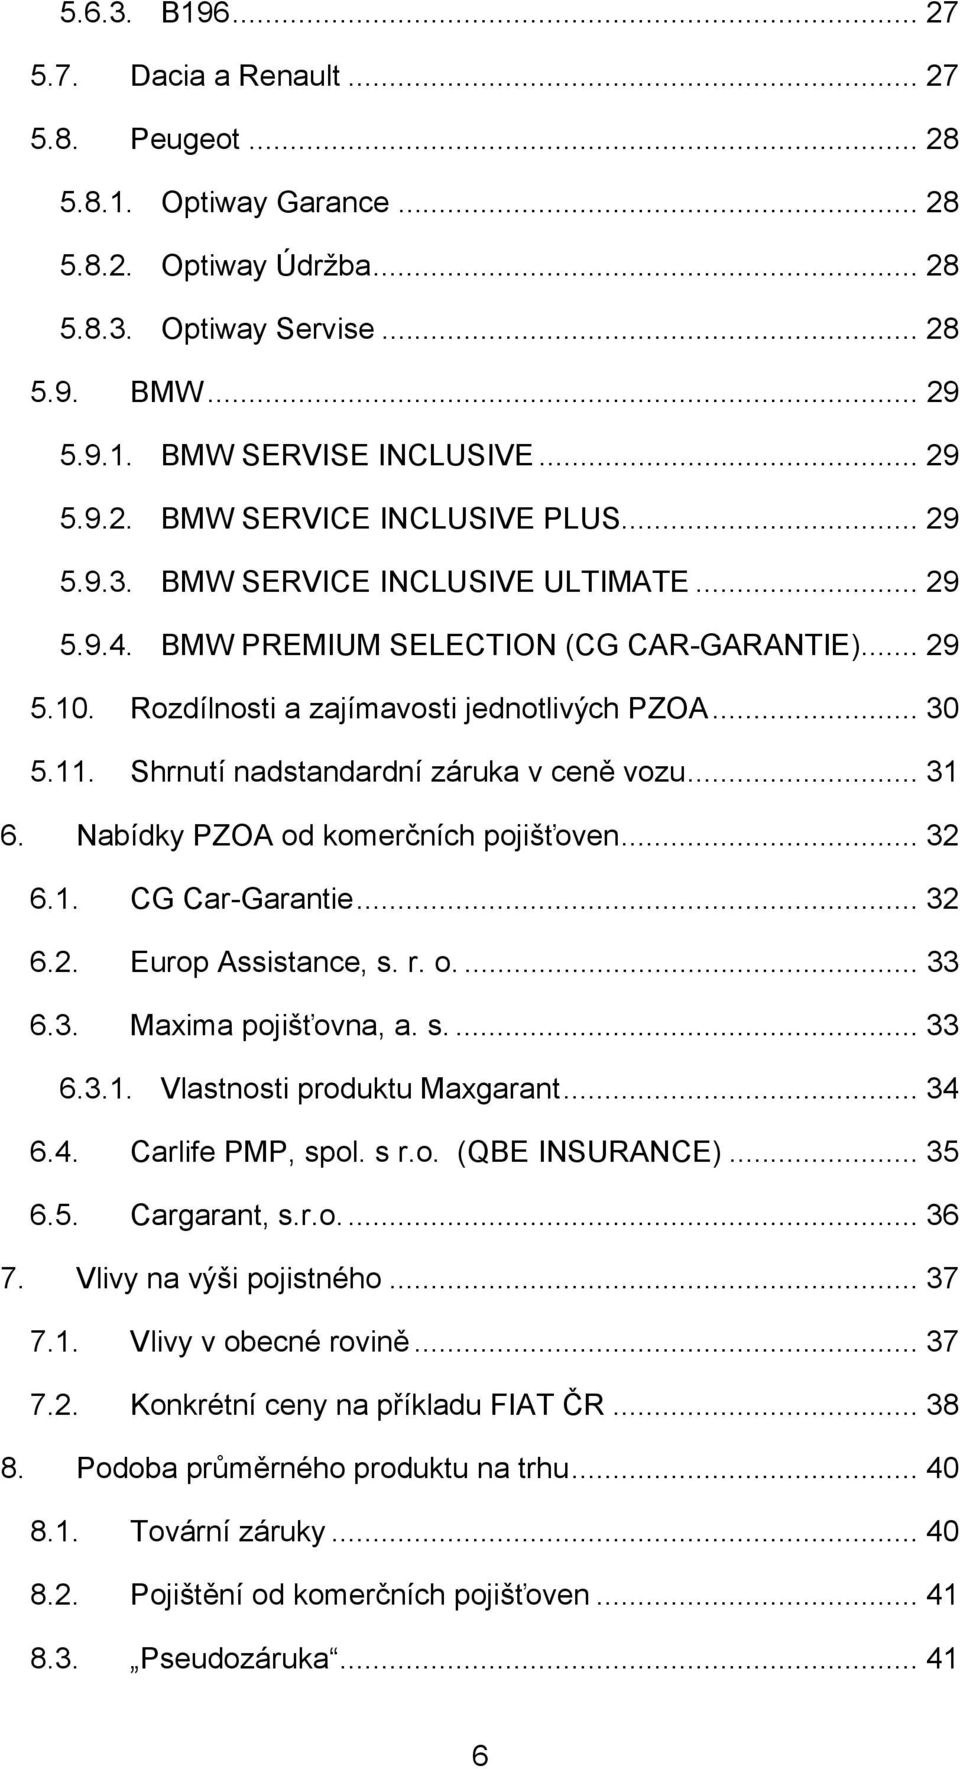 Shrnutí nadstandardní záruka v ceně vozu... 31 6. Nabídky PZOA od komerčních pojišťoven... 32 6.1. CG Car-Garantie... 32 6.2. Europ Assistance, s. r. o.... 33 6.3. Maxima pojišťovna, a. s.... 33 6.3.1. Vlastnosti produktu Maxgarant.